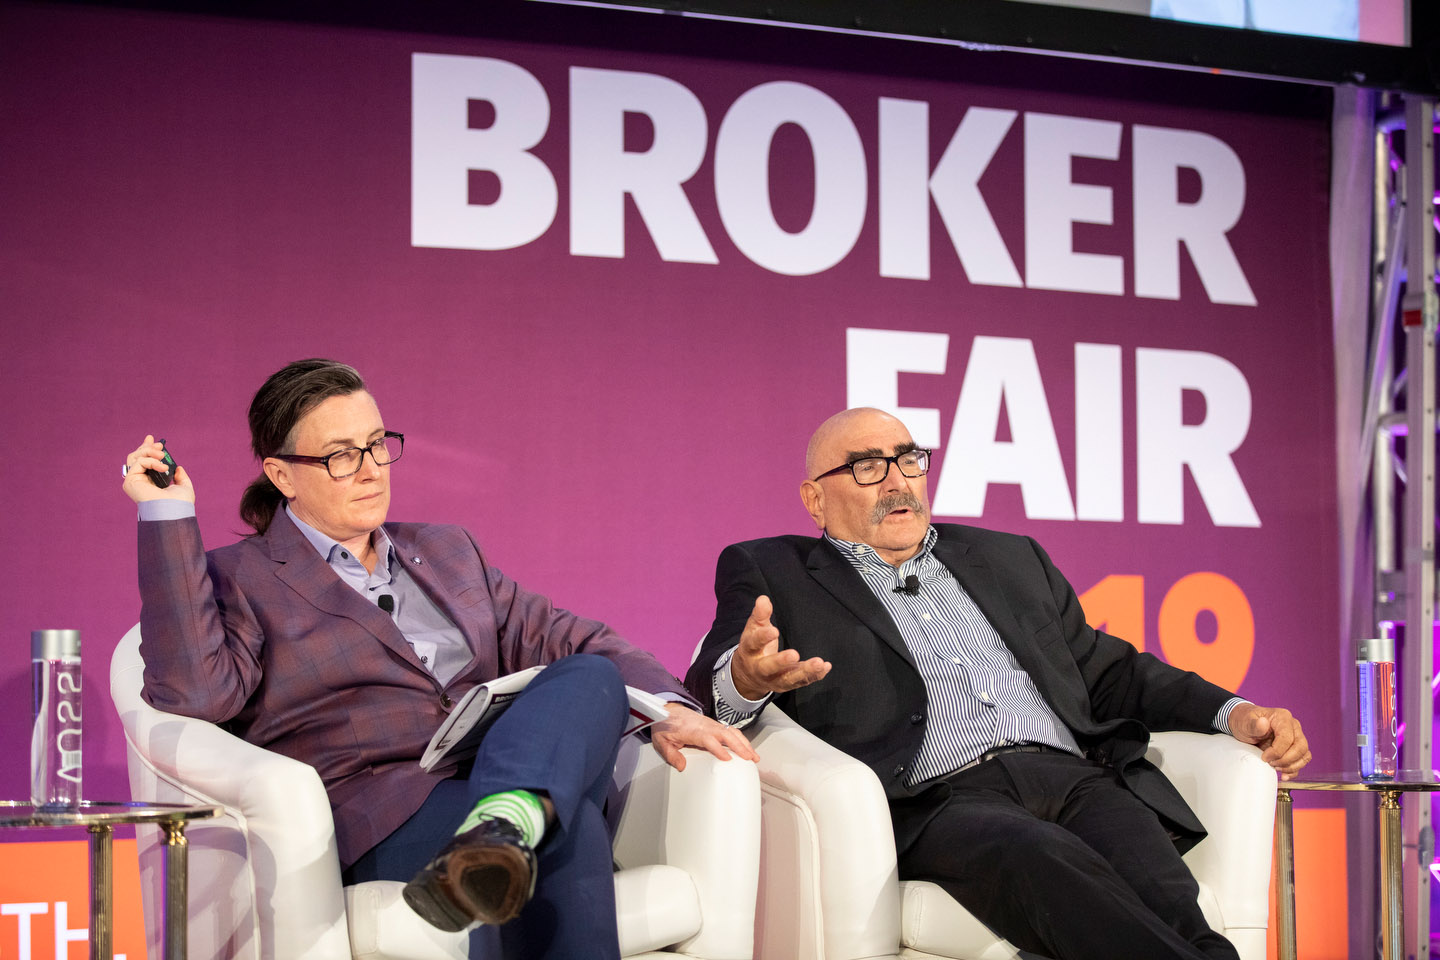 Broker Fair 2019 - Presented by deBanked - 440